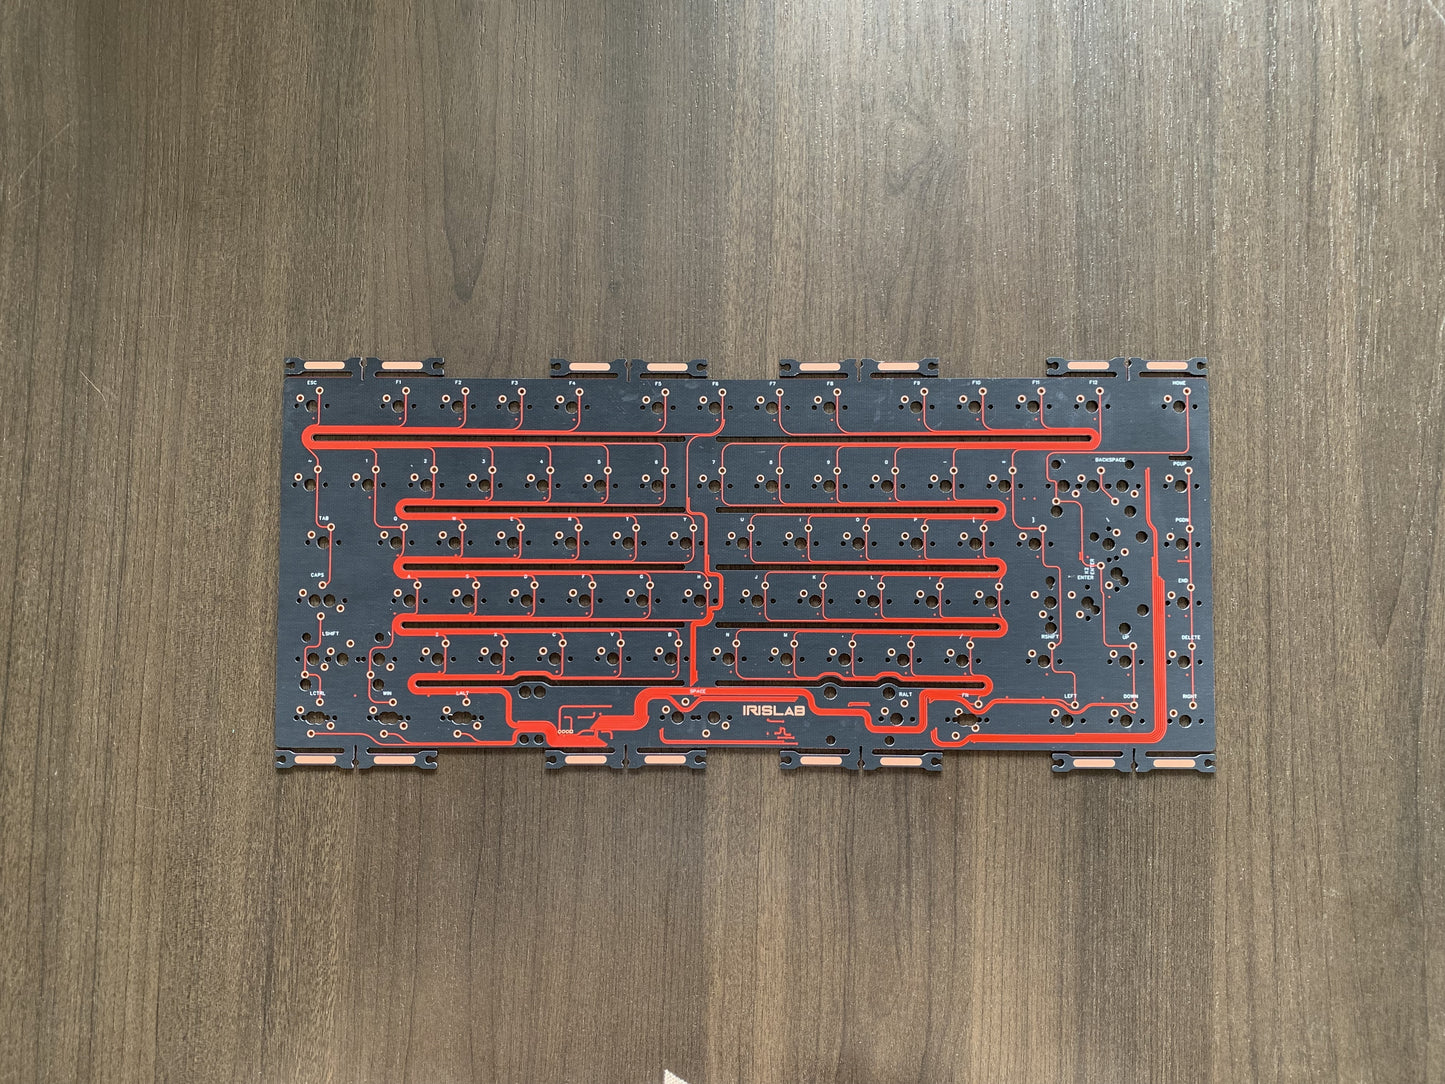 
                  
                    (Group Buy) Jris75 Keyboard Addons
                  
                